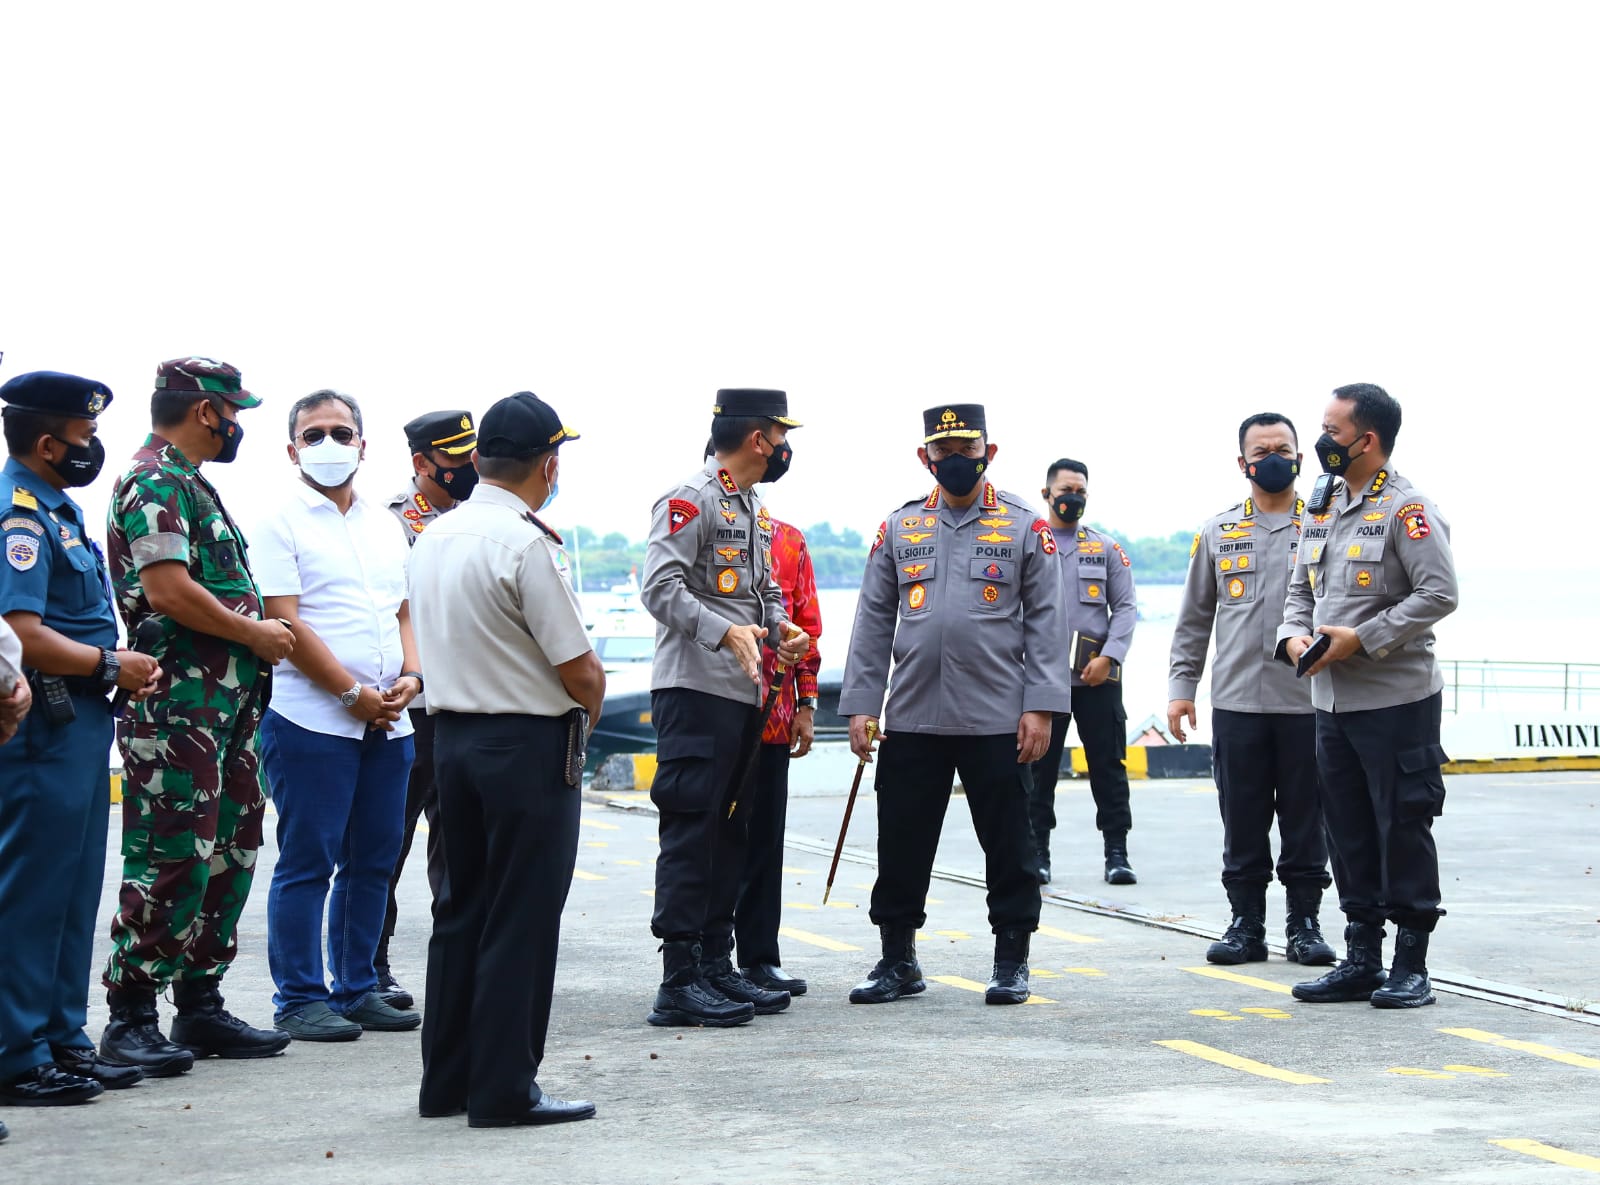 Tinjau Pelabuhan Benoa, Kapolri Minta Prokes dan Karantina PPLN Diperketat | Memo Surabaya